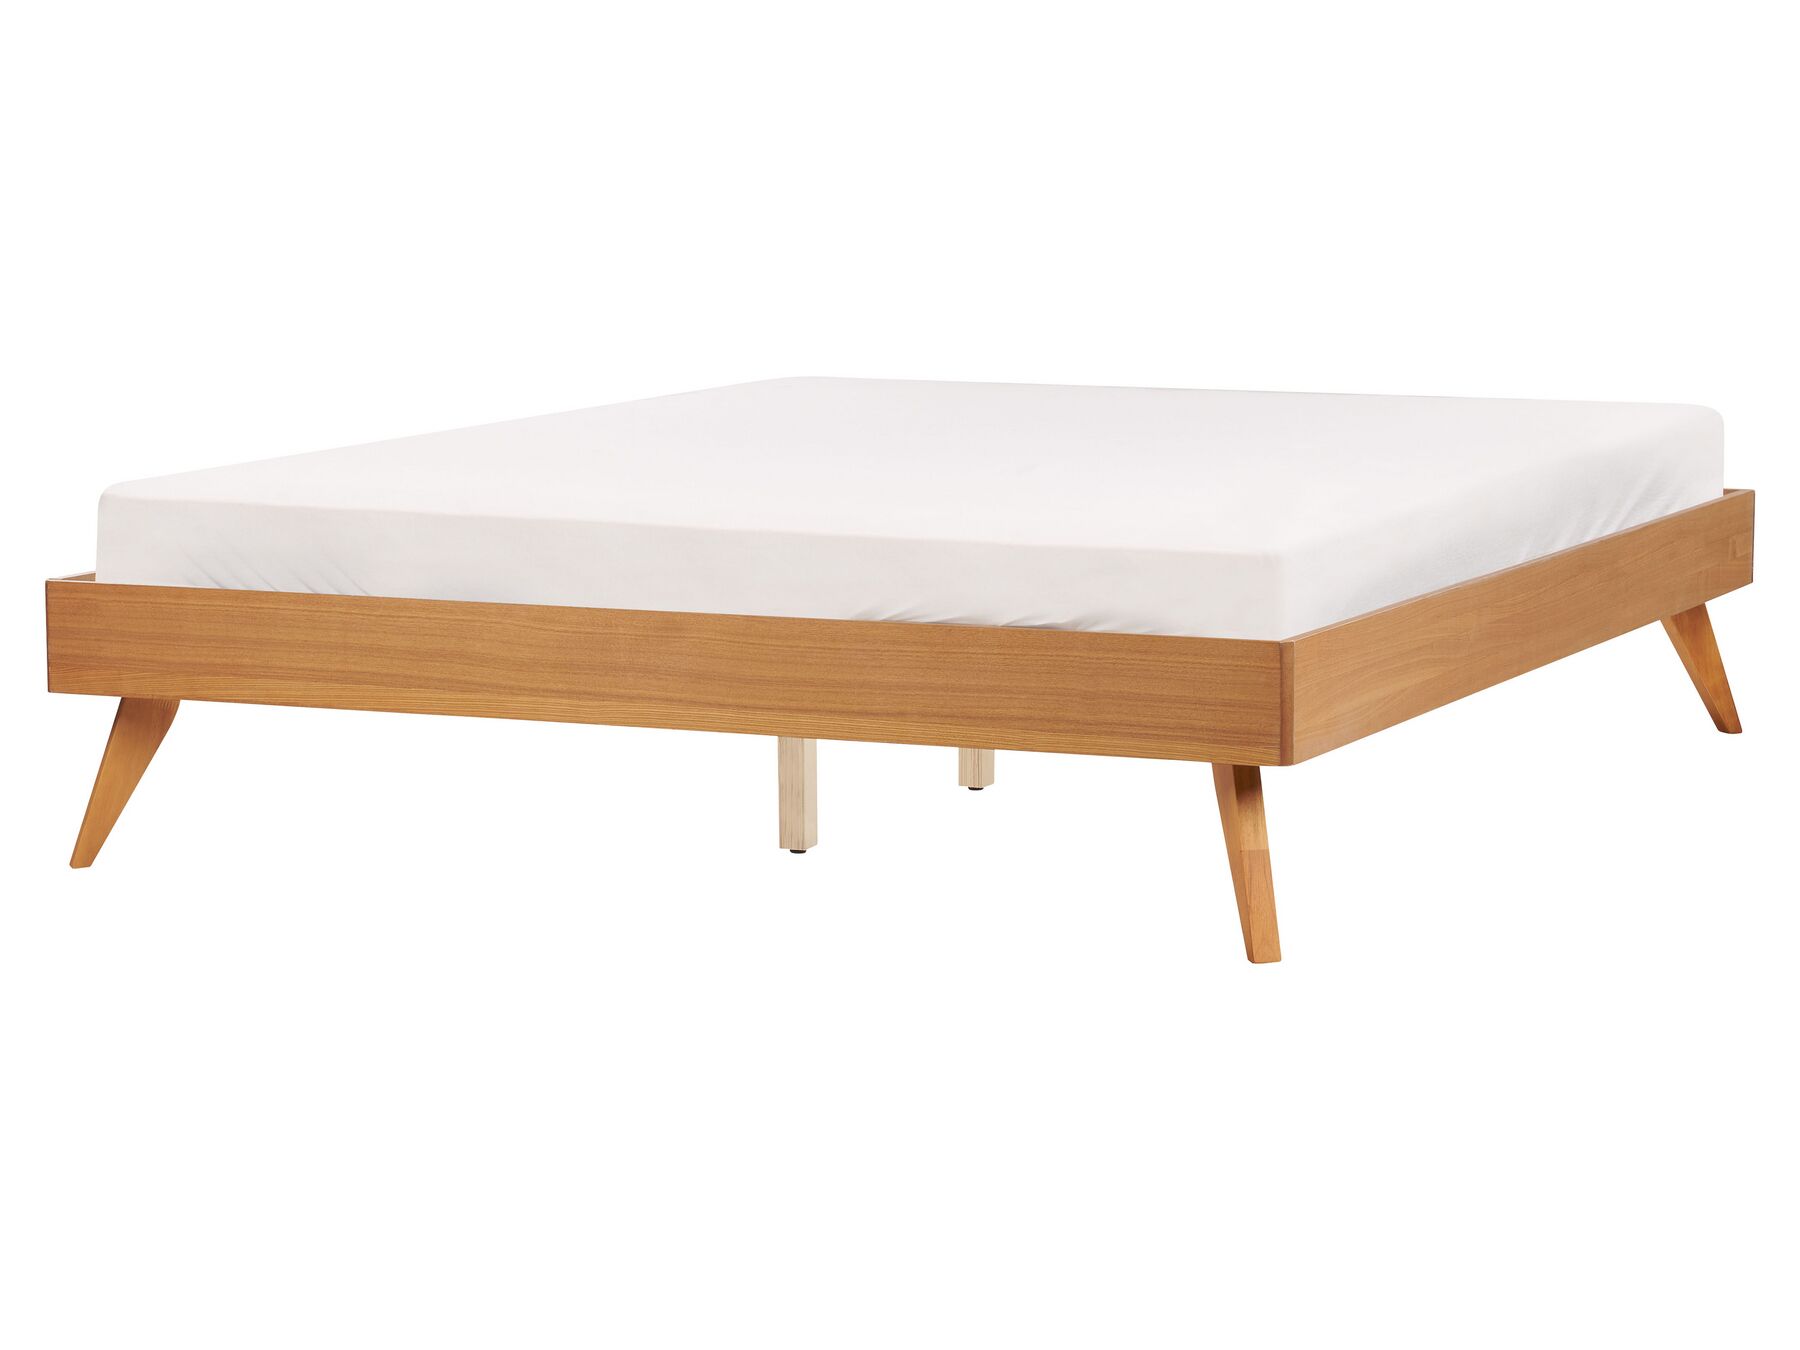 Łóżko 160 x 200 cm jasne drewno BERRIC_912534